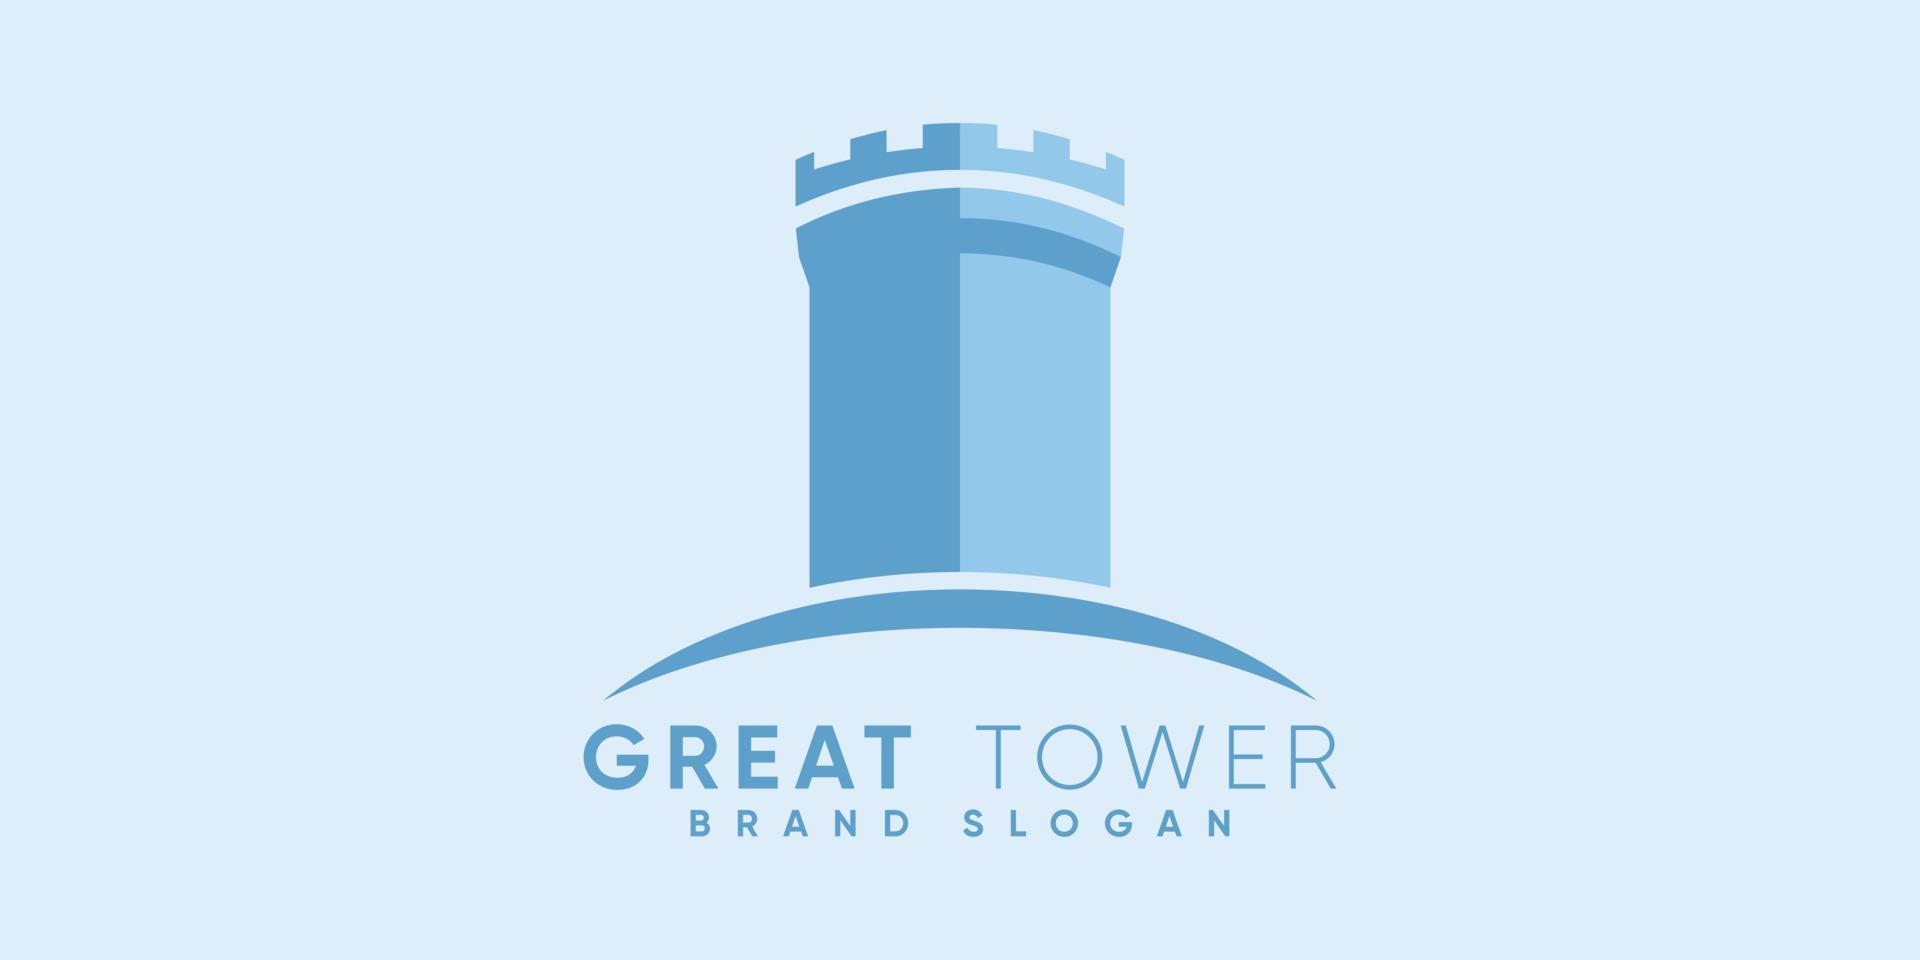 Super goed toren logo met modern ontwerp premie vector